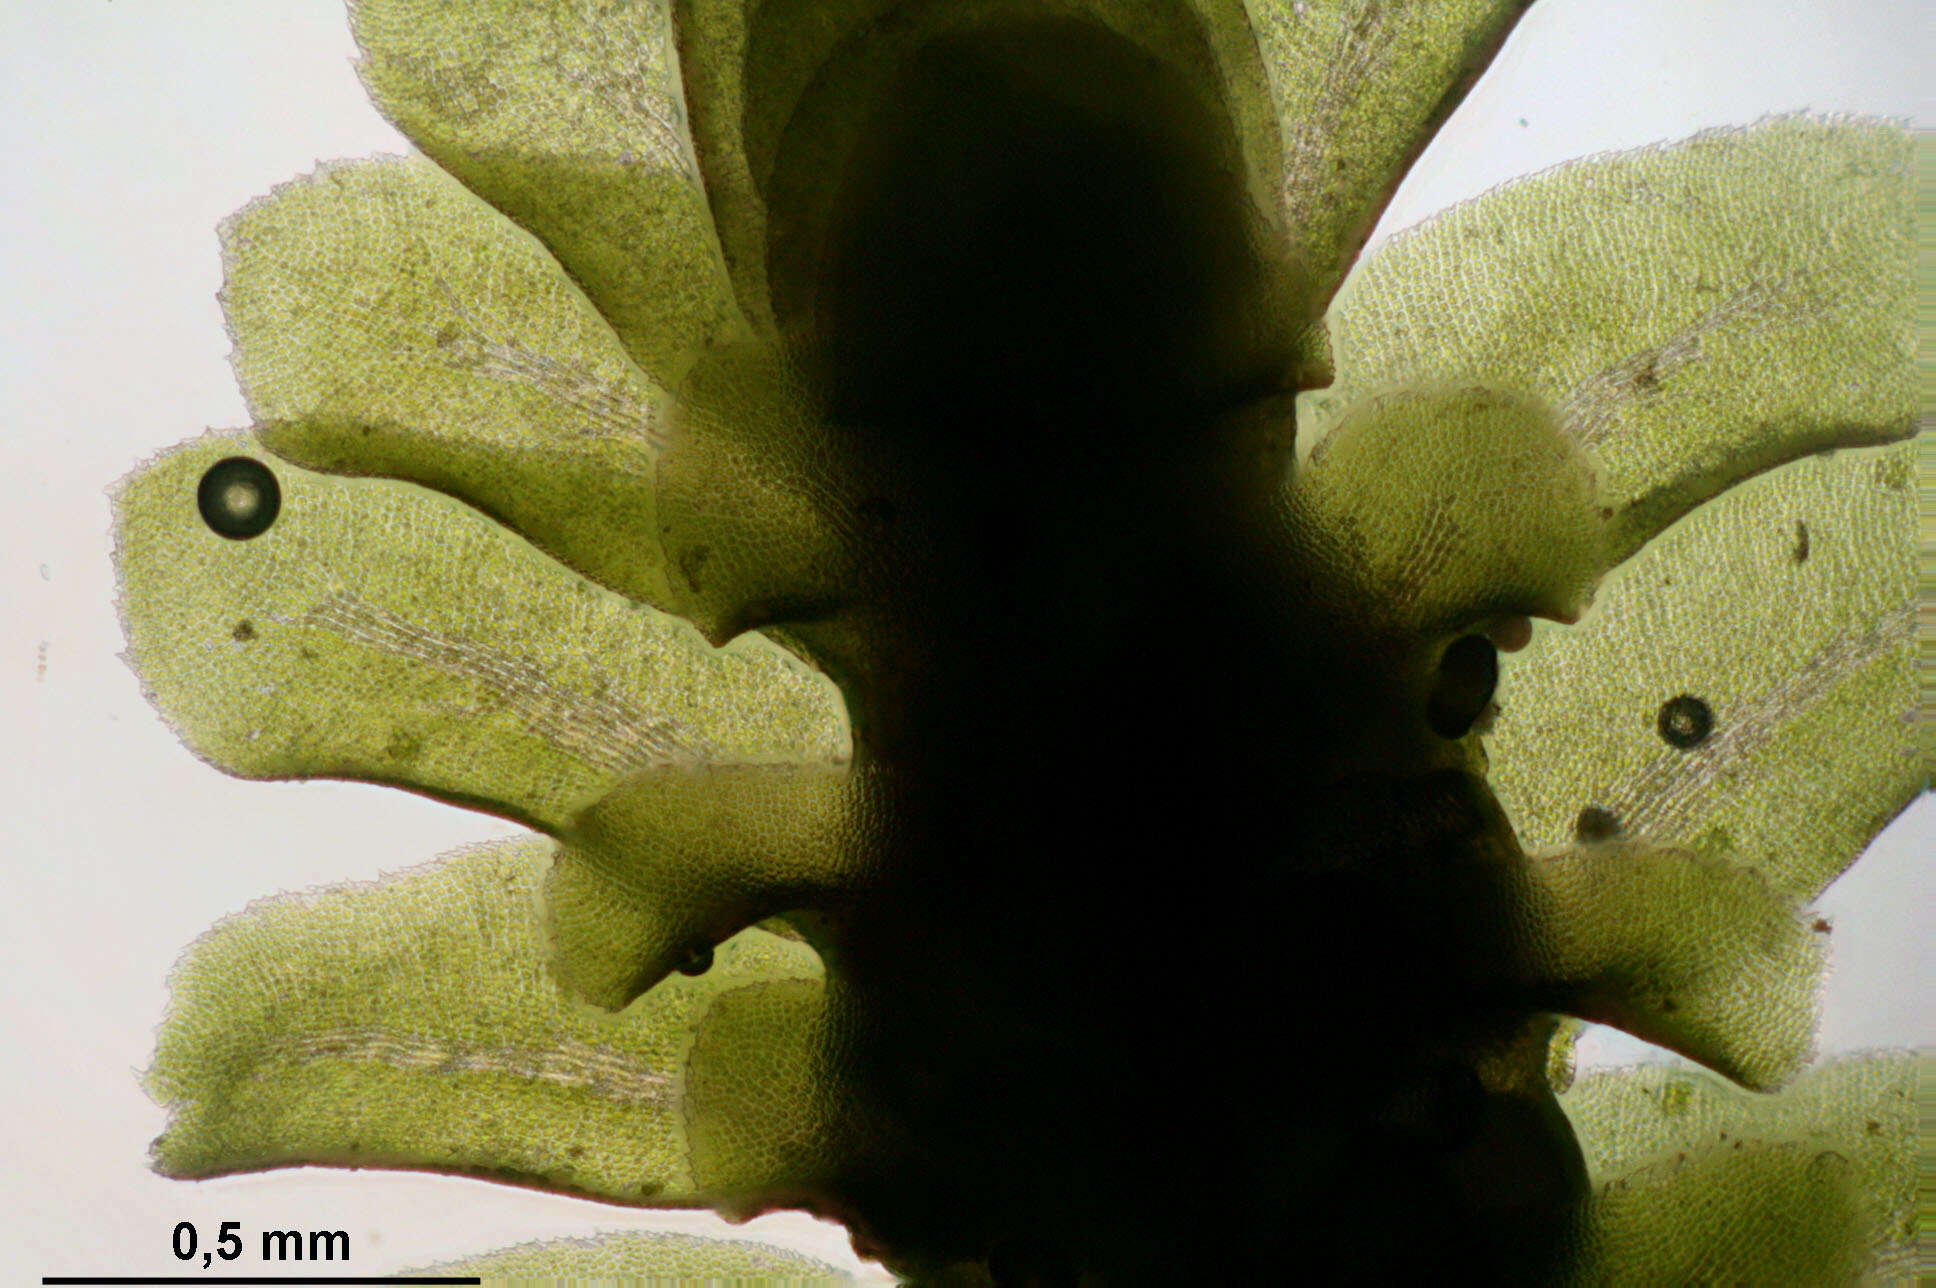 Image of Common Fold-leaf Liverwort